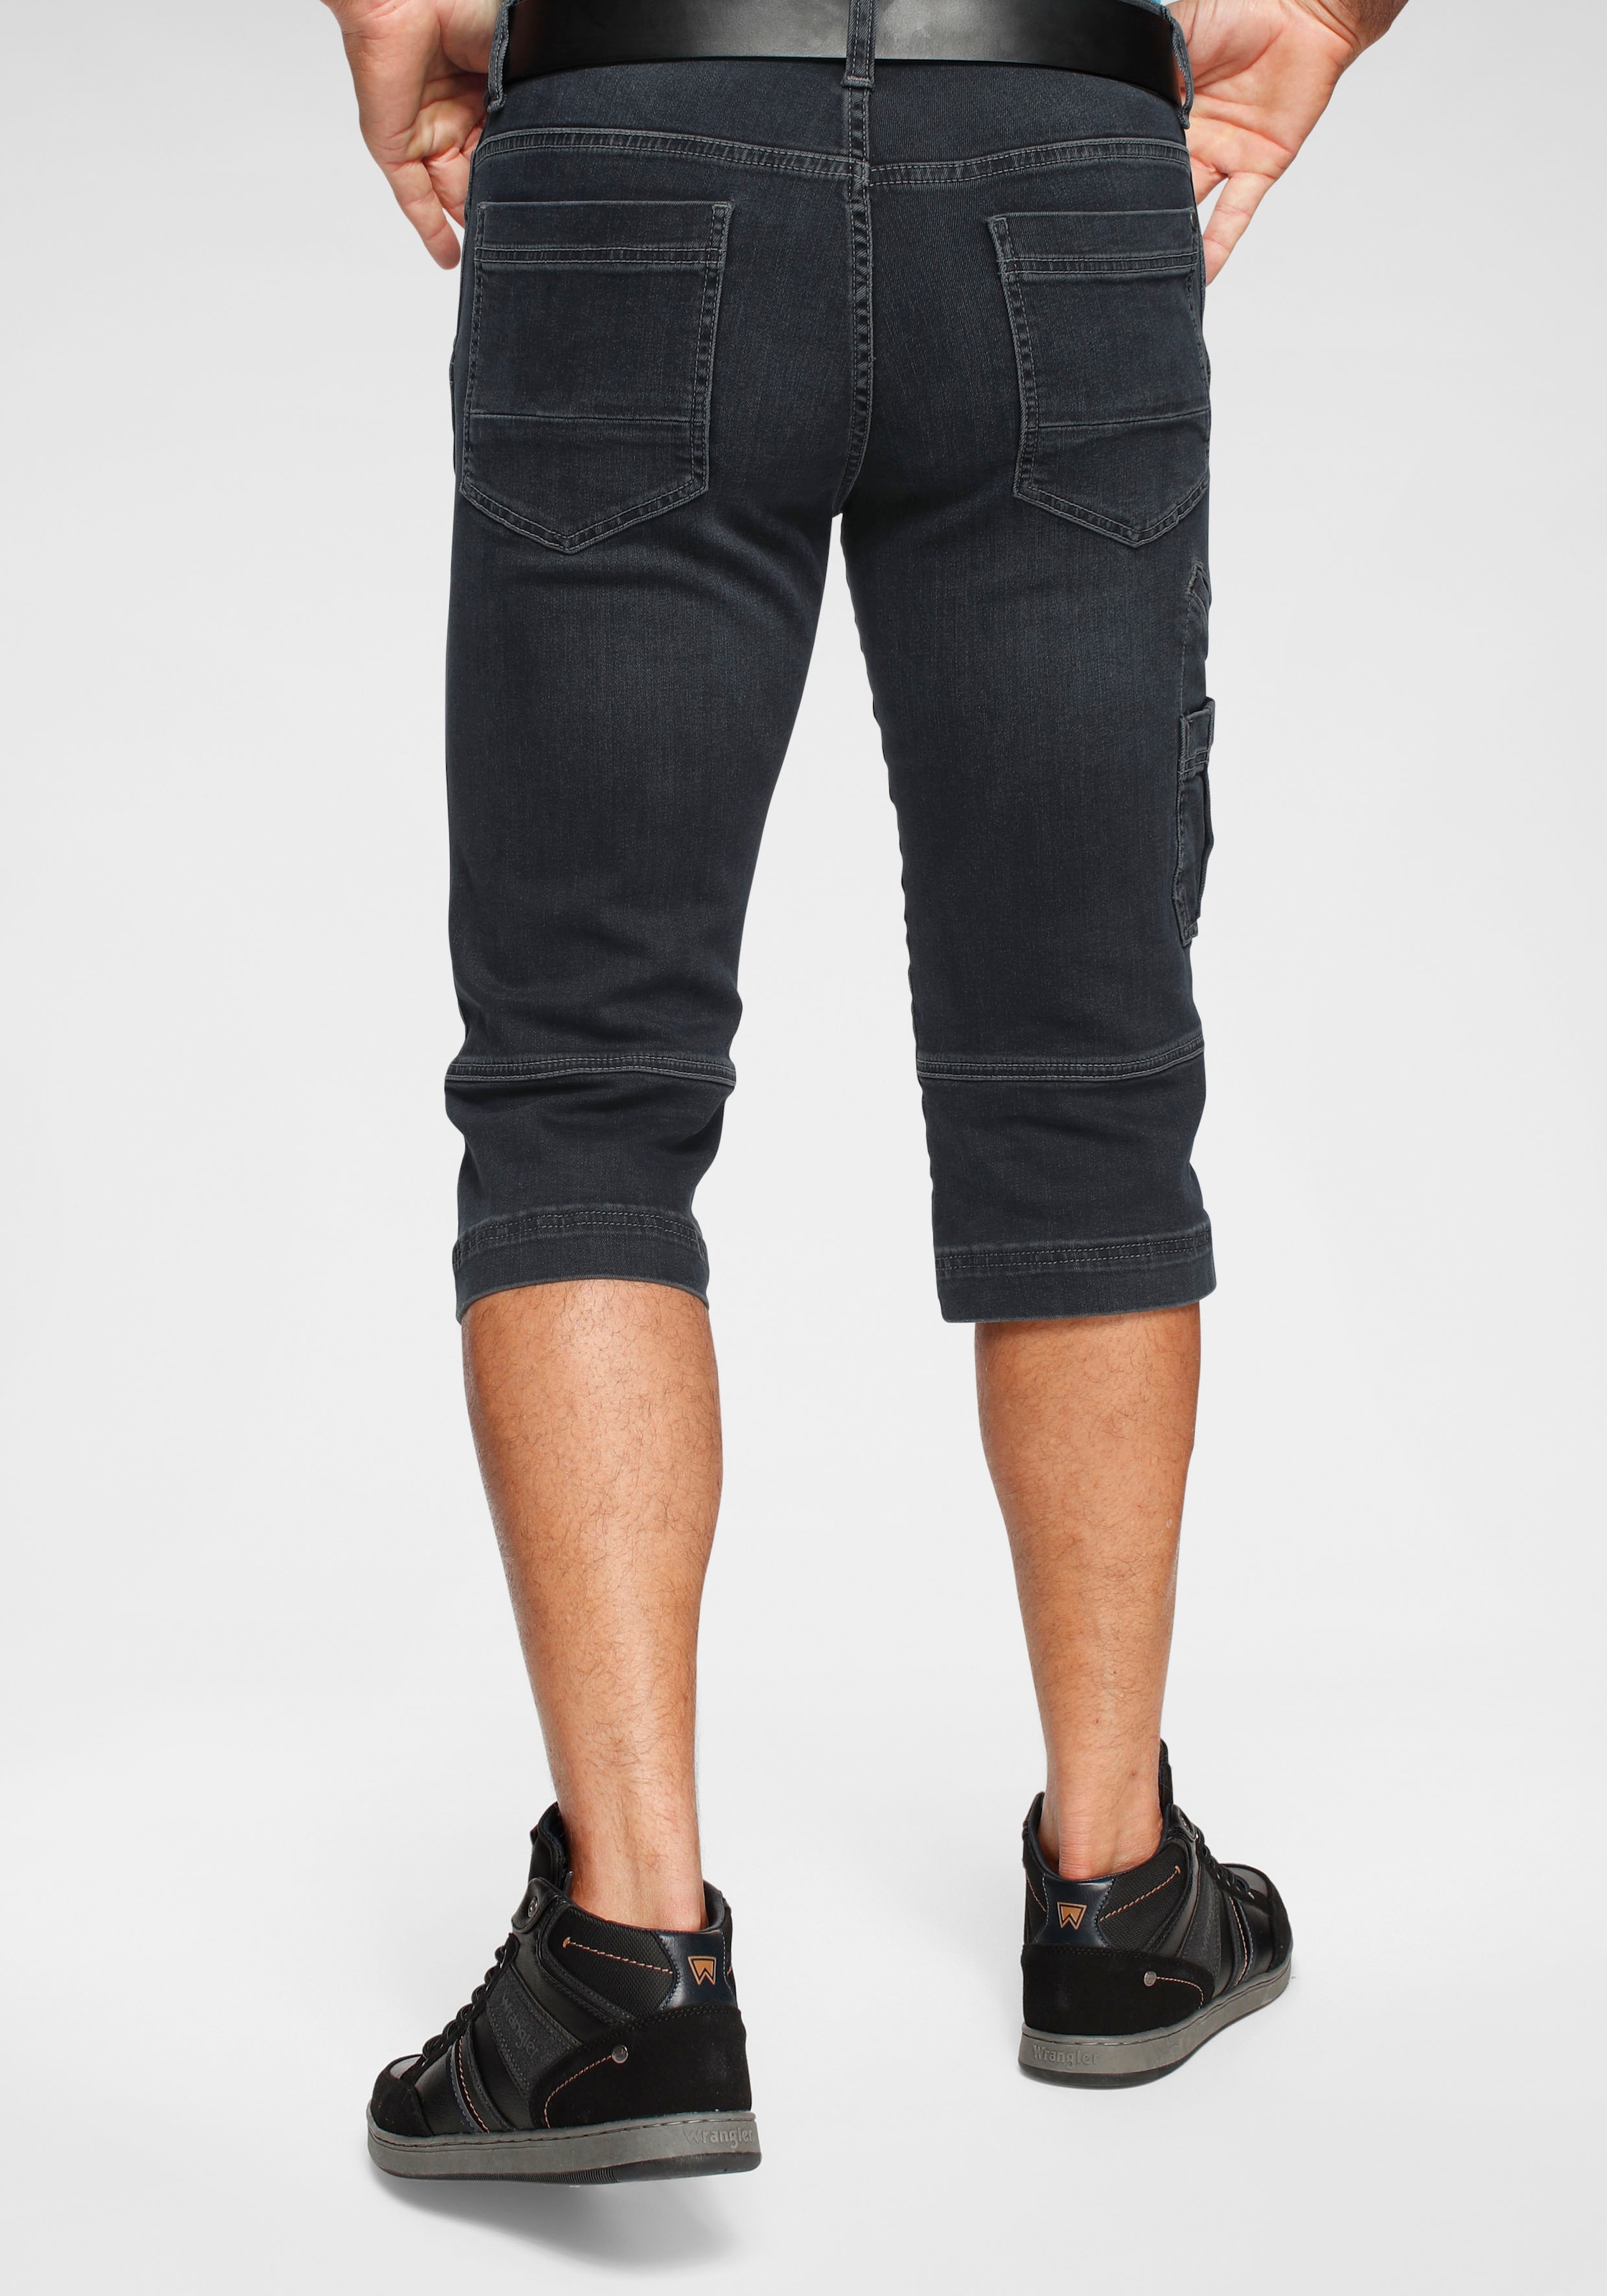 Modische Pioneer Authentic Jeans 3/4-Hose kaufen | Ackermann.ch